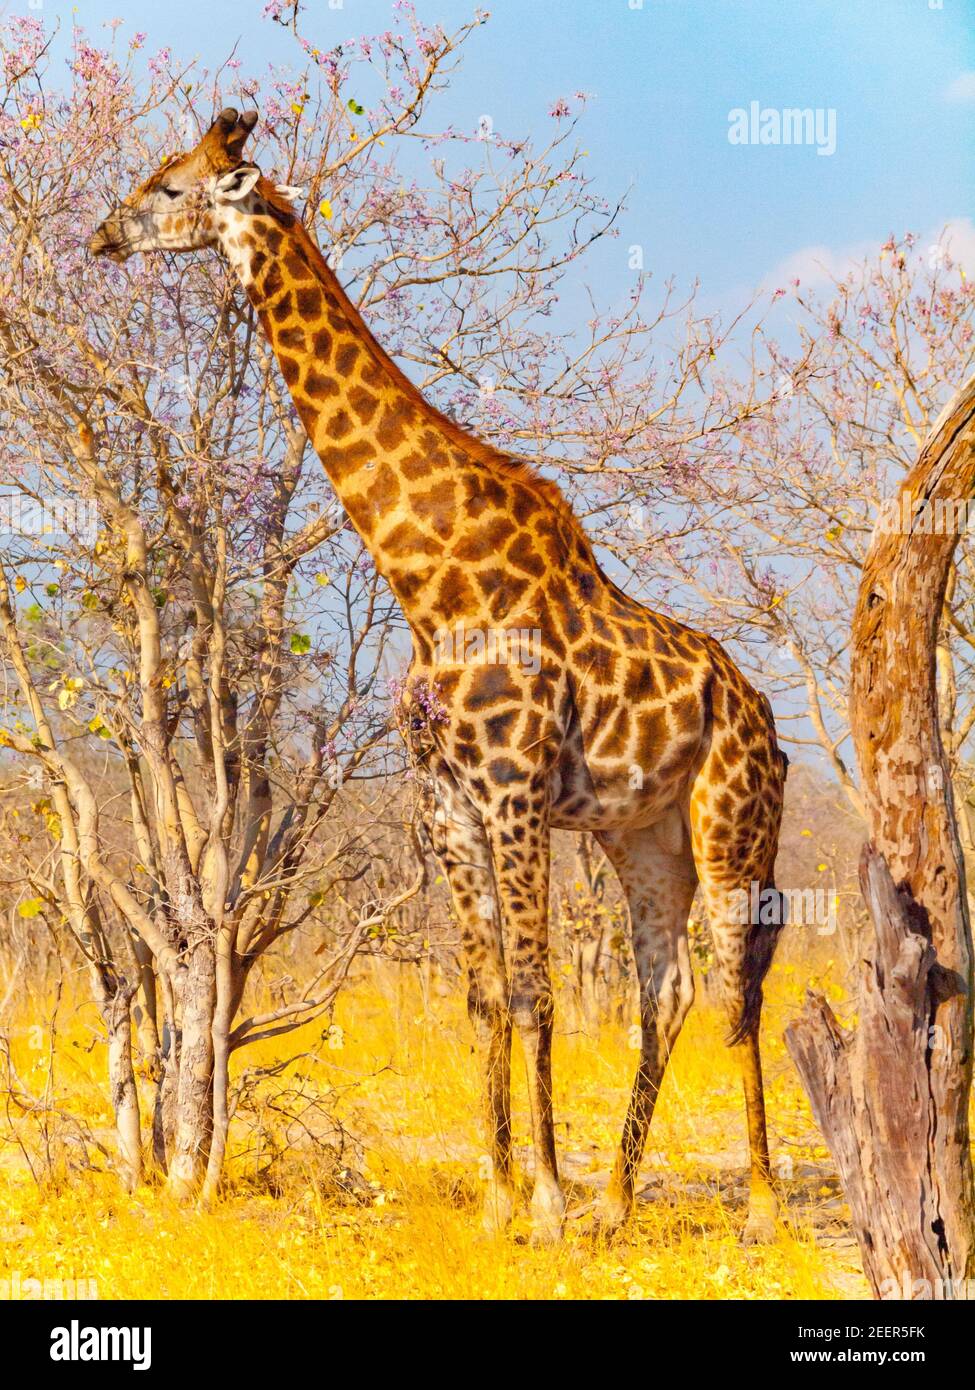 Giraffe in african savanna Stock Photo